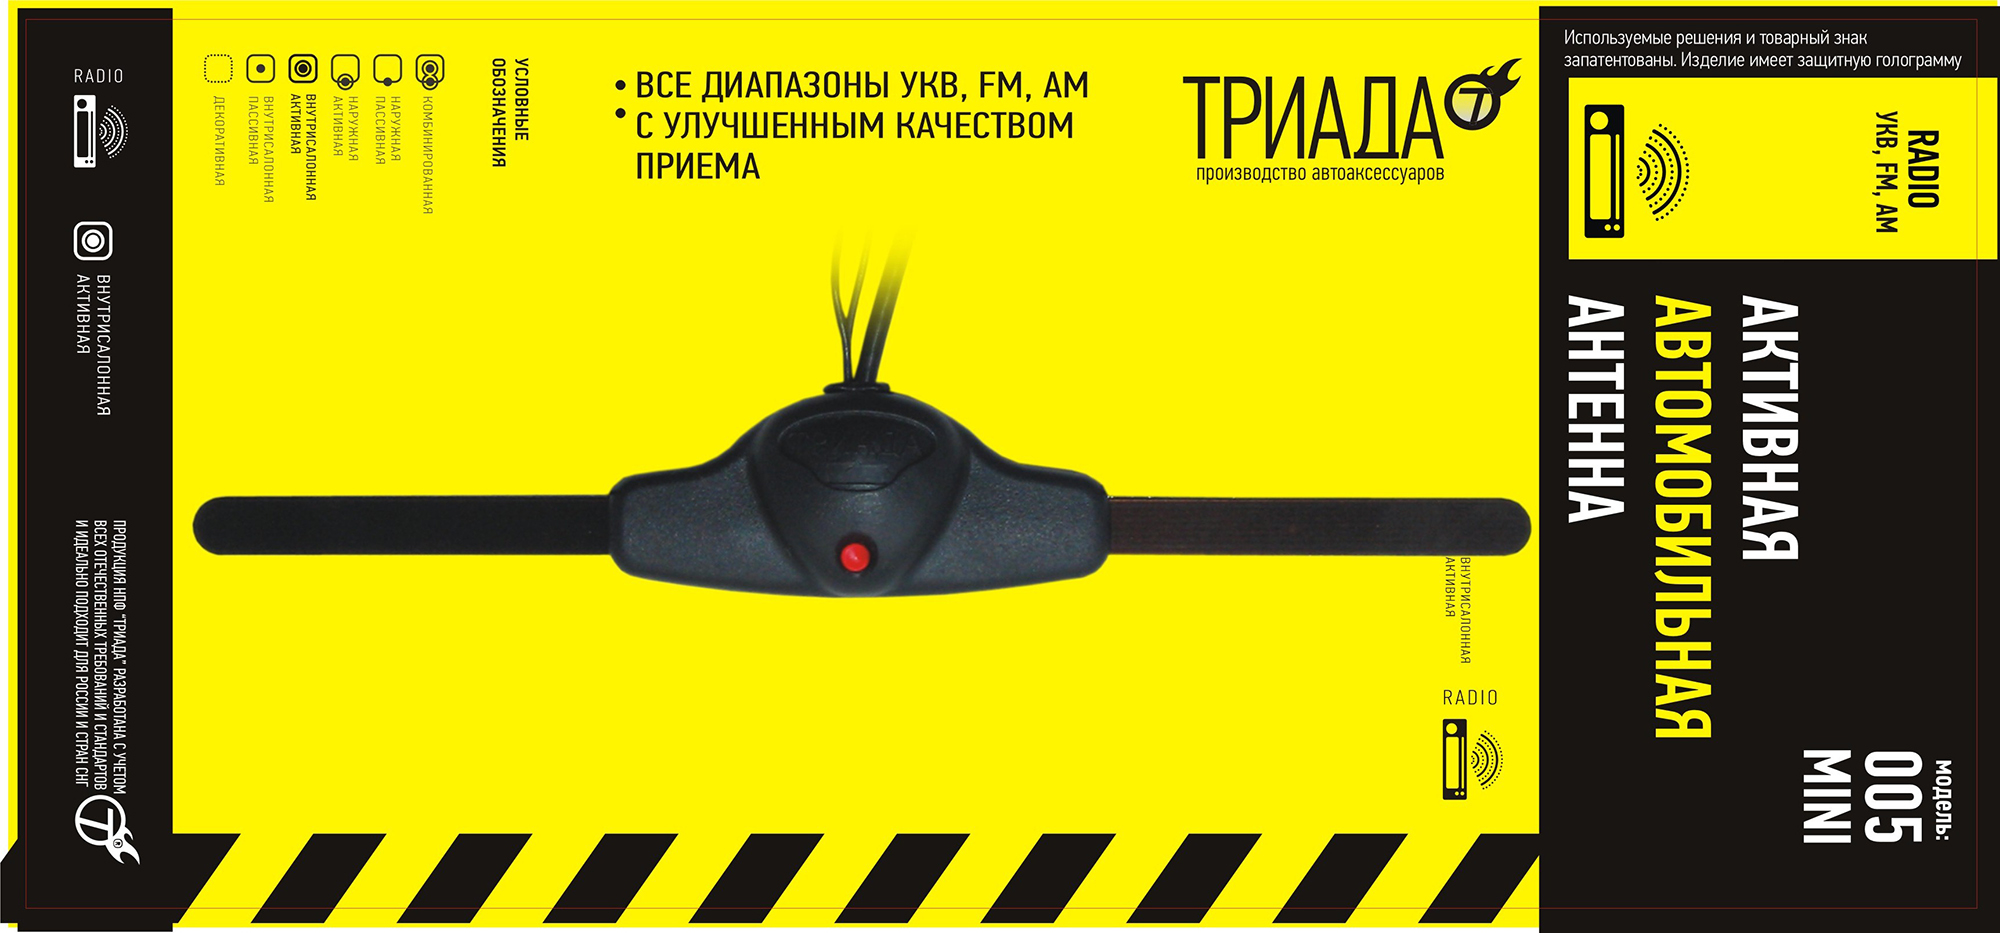 Антенна FM Триада-005 Mini активная антенна fm триада ма 86 03 супермагнит